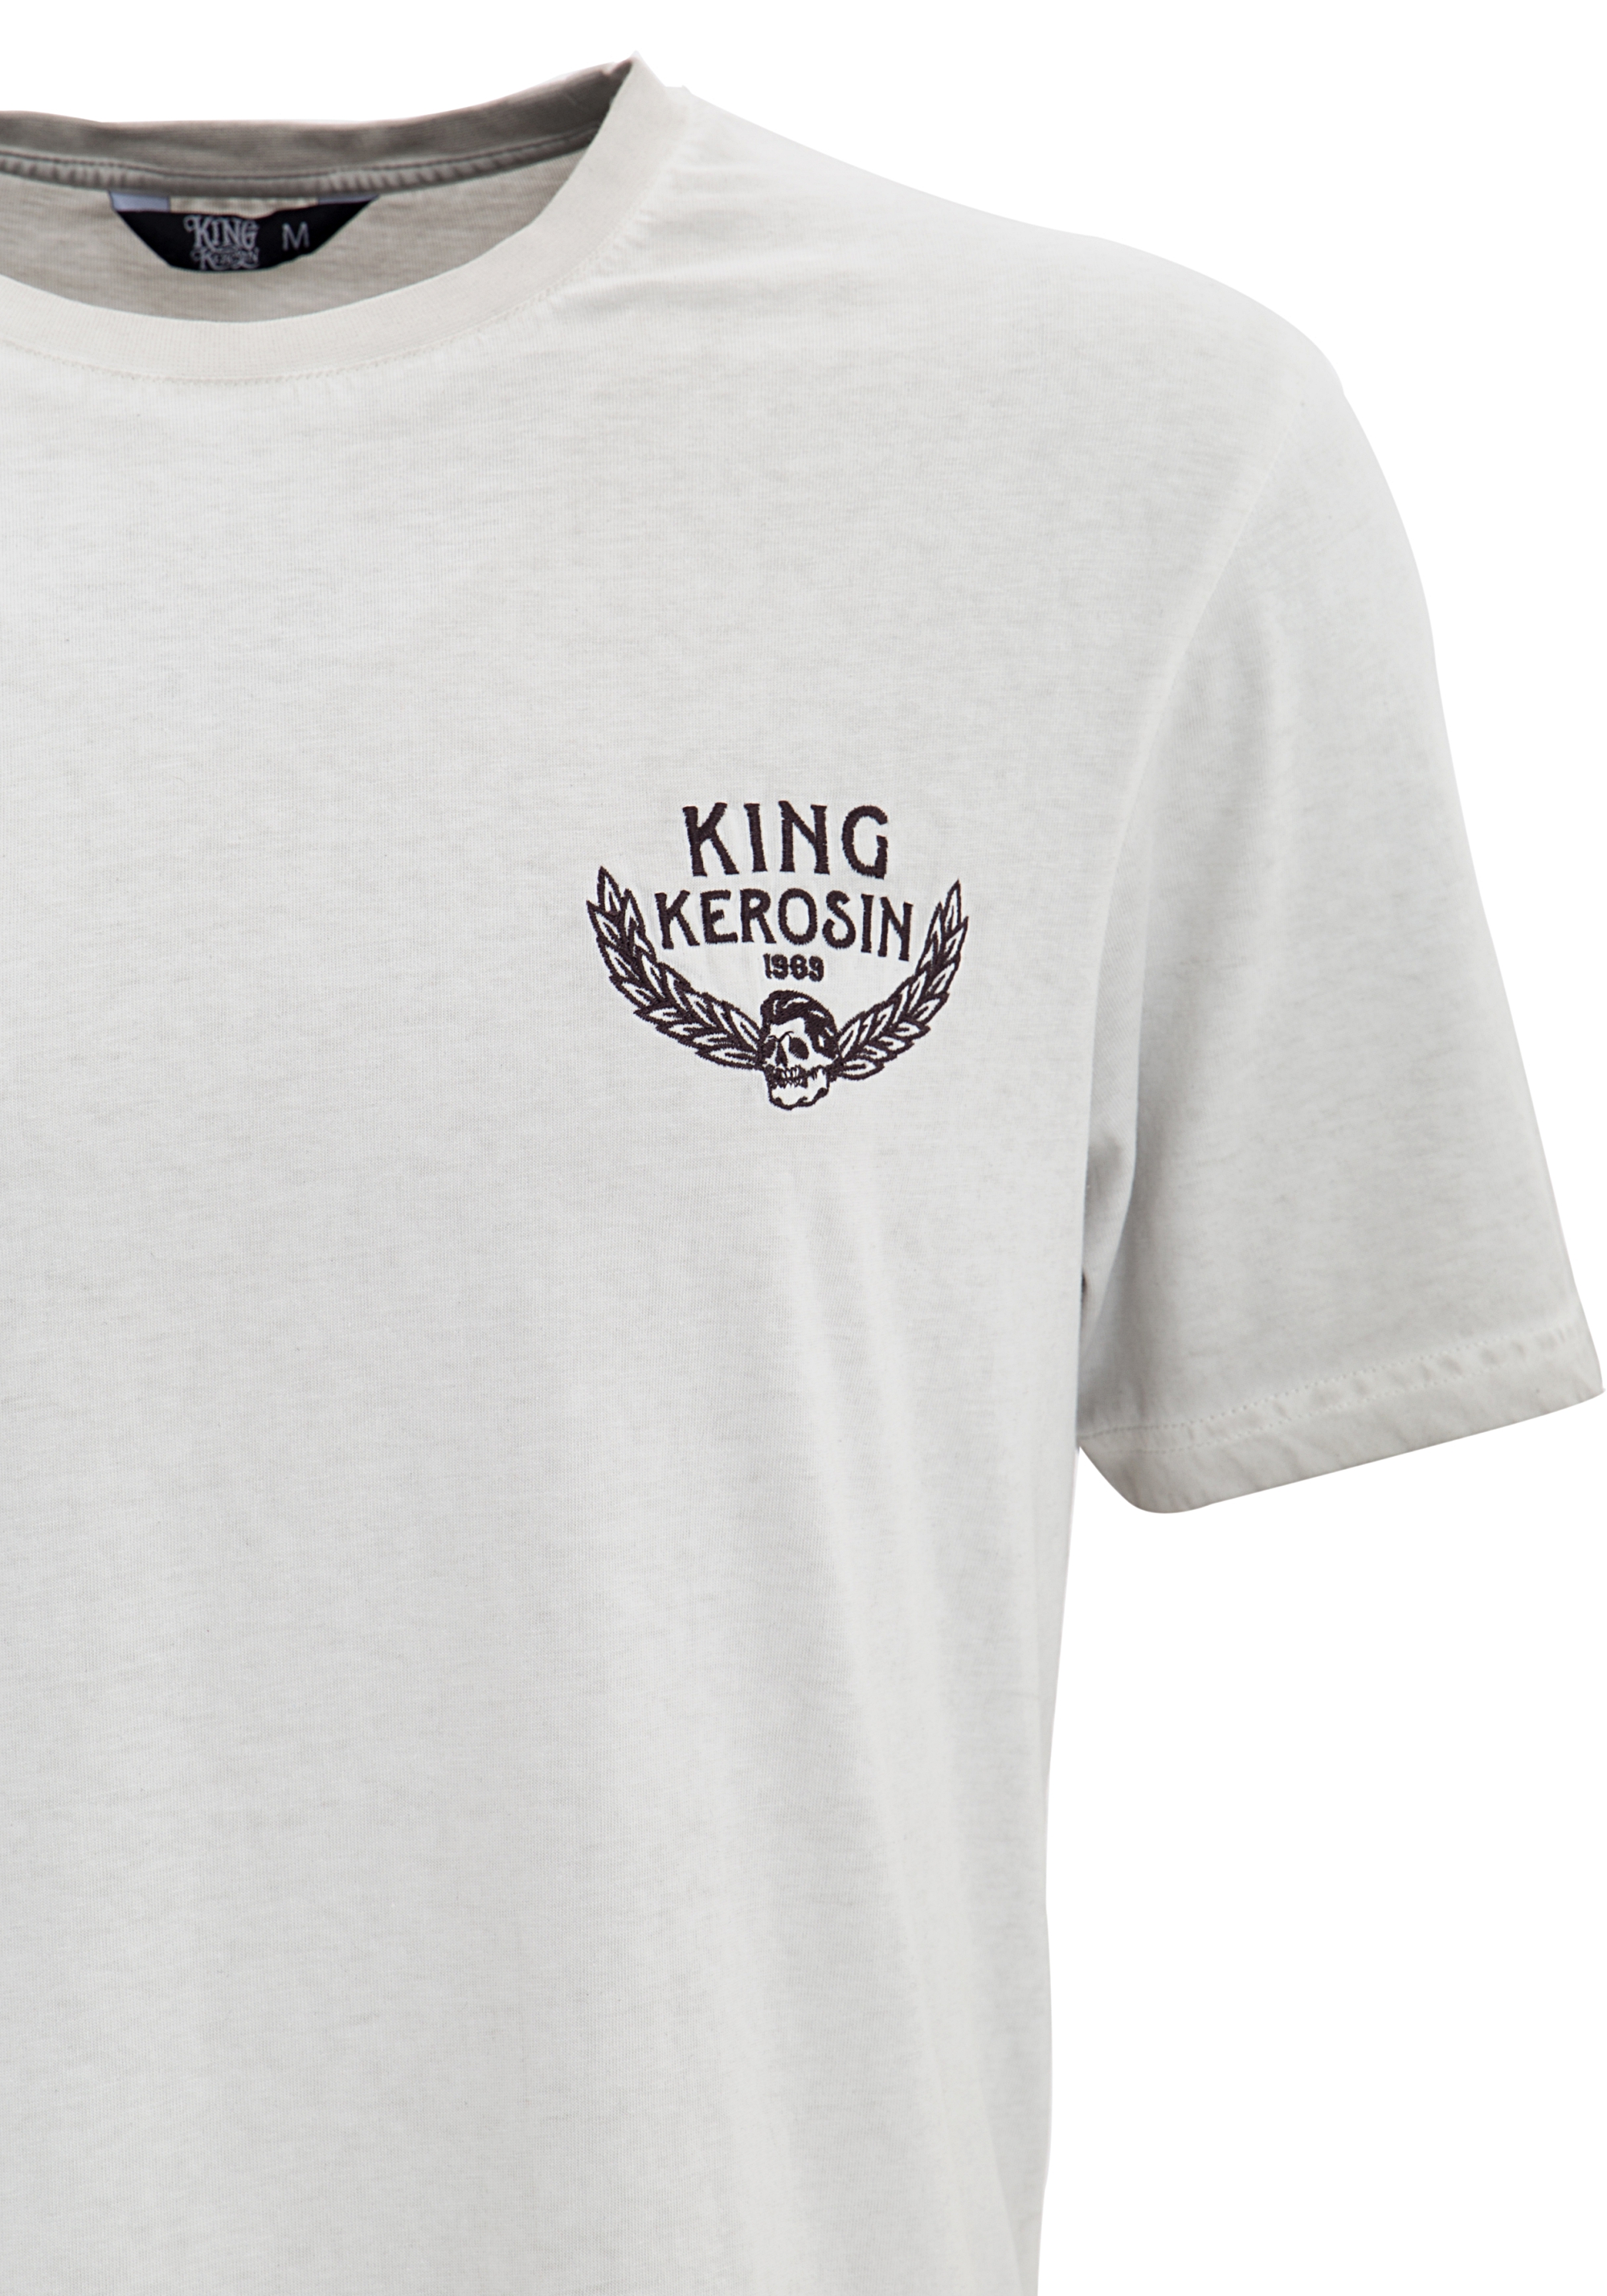 King Kerosin T-Shirt - Forever Classic S